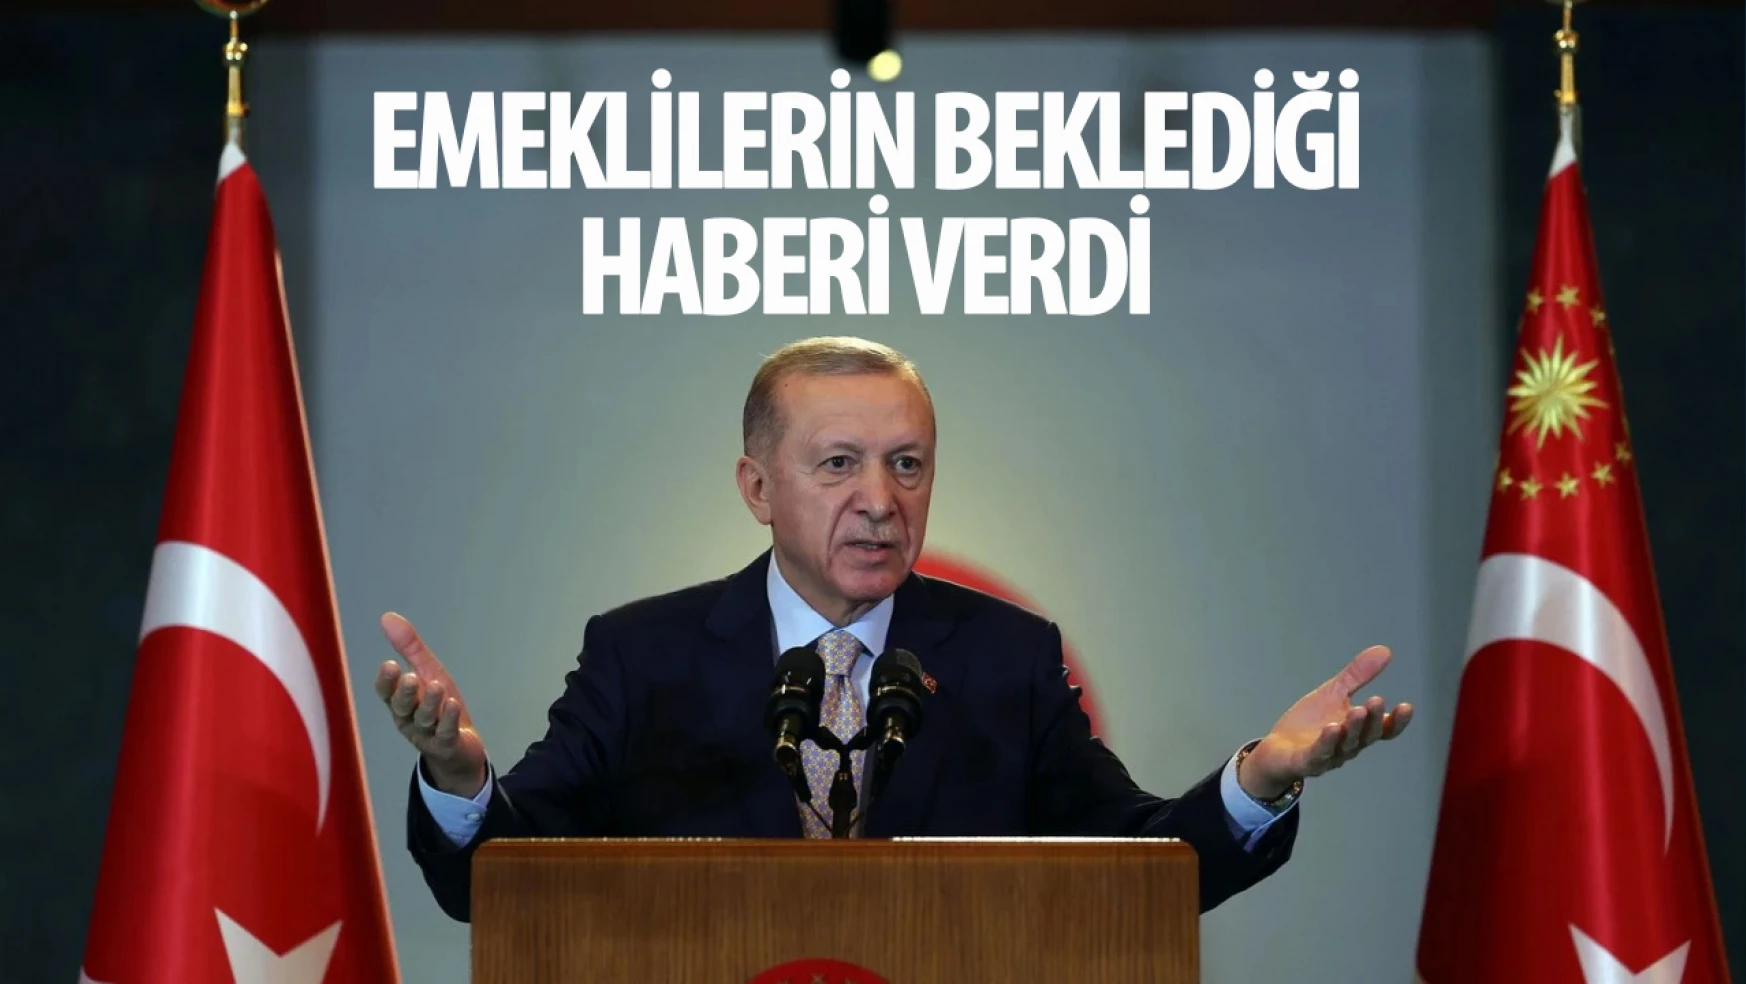 Emeklilerin dört gözle beklediği haberi Erdoğan duyurdu!